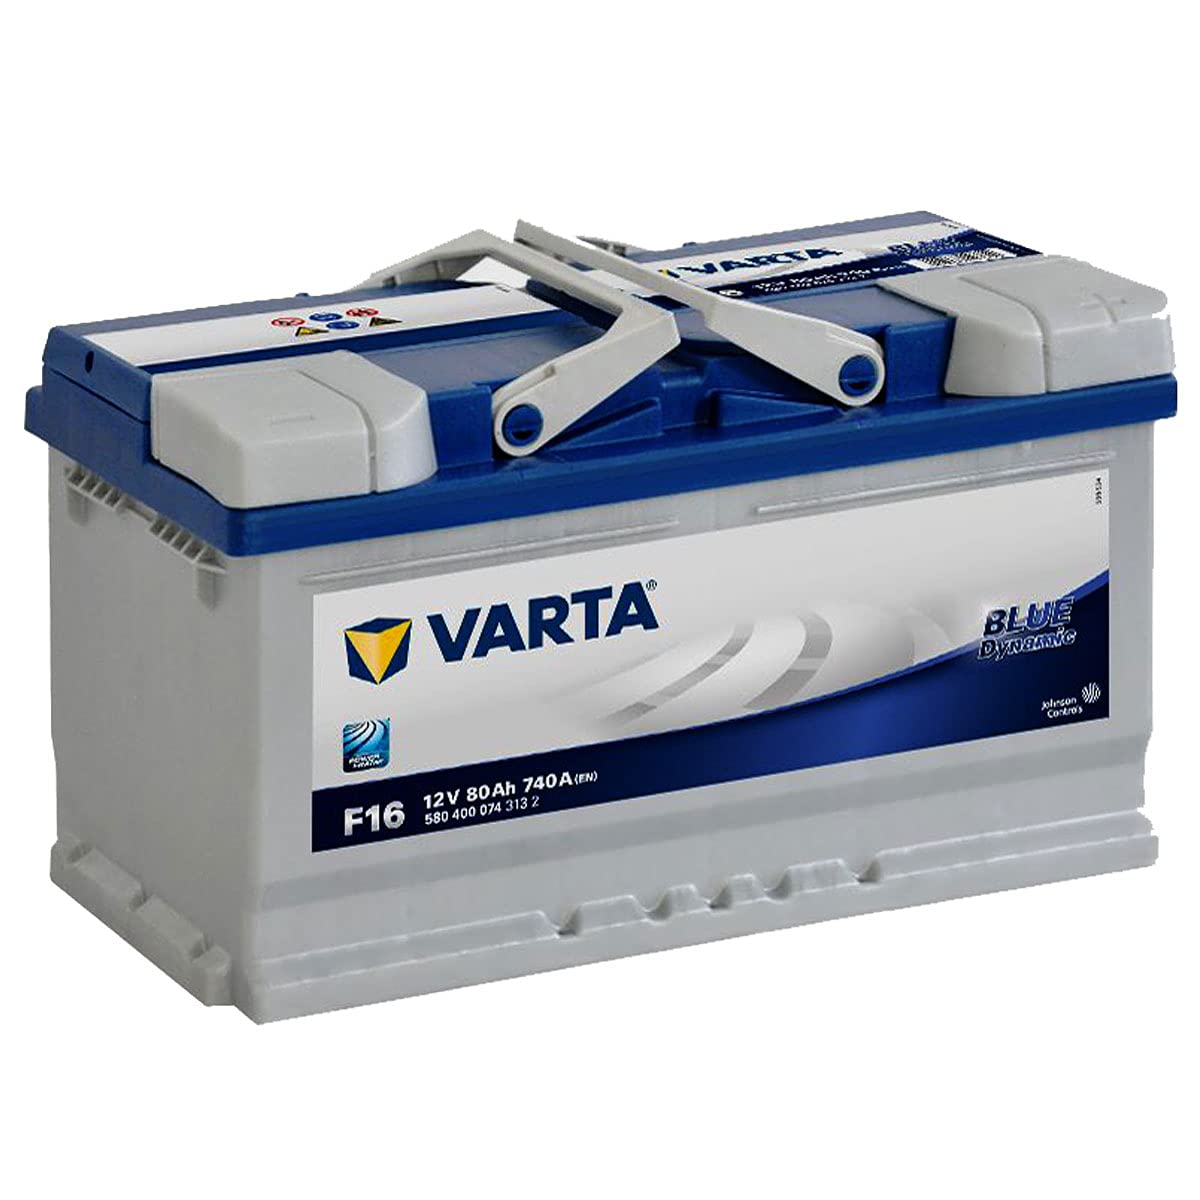 Varta F16 Blue Dynamic 580 400 074 3132, 12V 80Ah 740A/EN von Varta